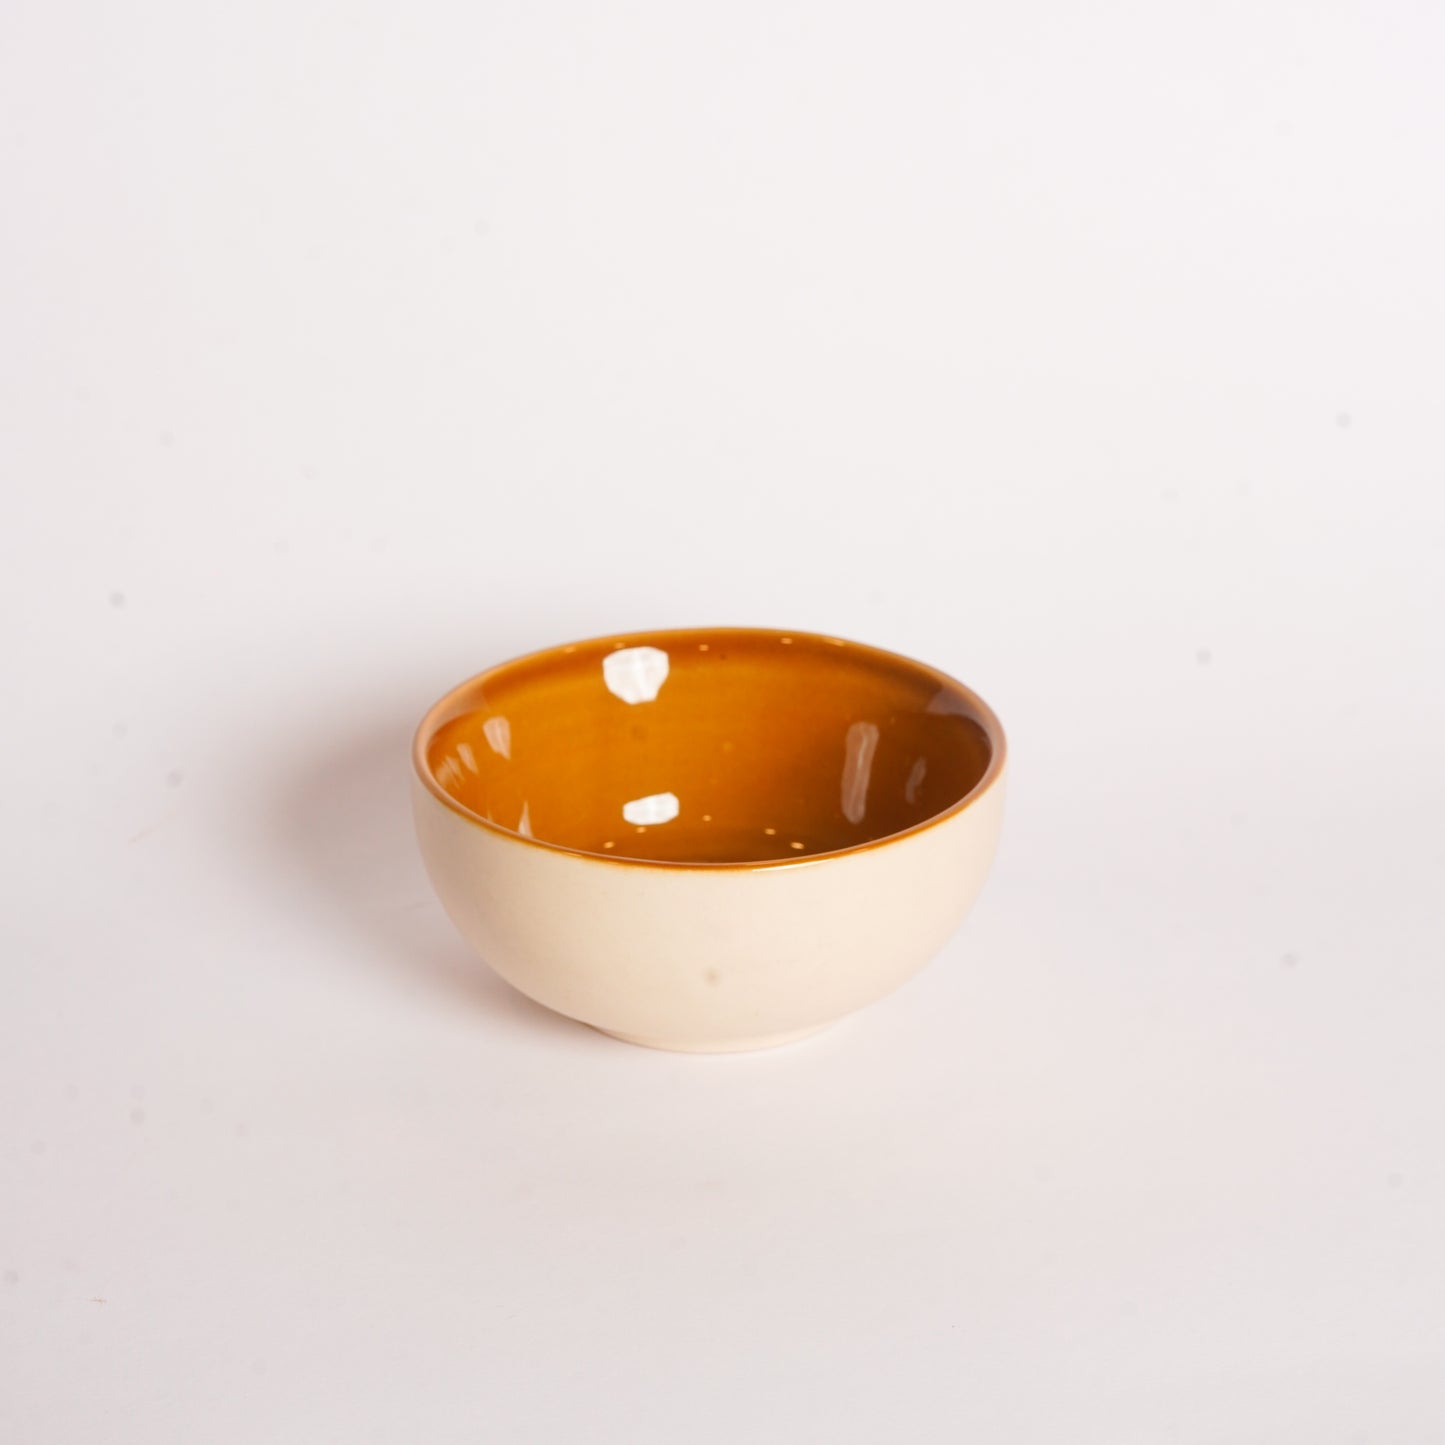 Caffeine Ceramic Handmade White & Mustard katori Bowl (Set of 6) - Caffeine Premium Stoneware